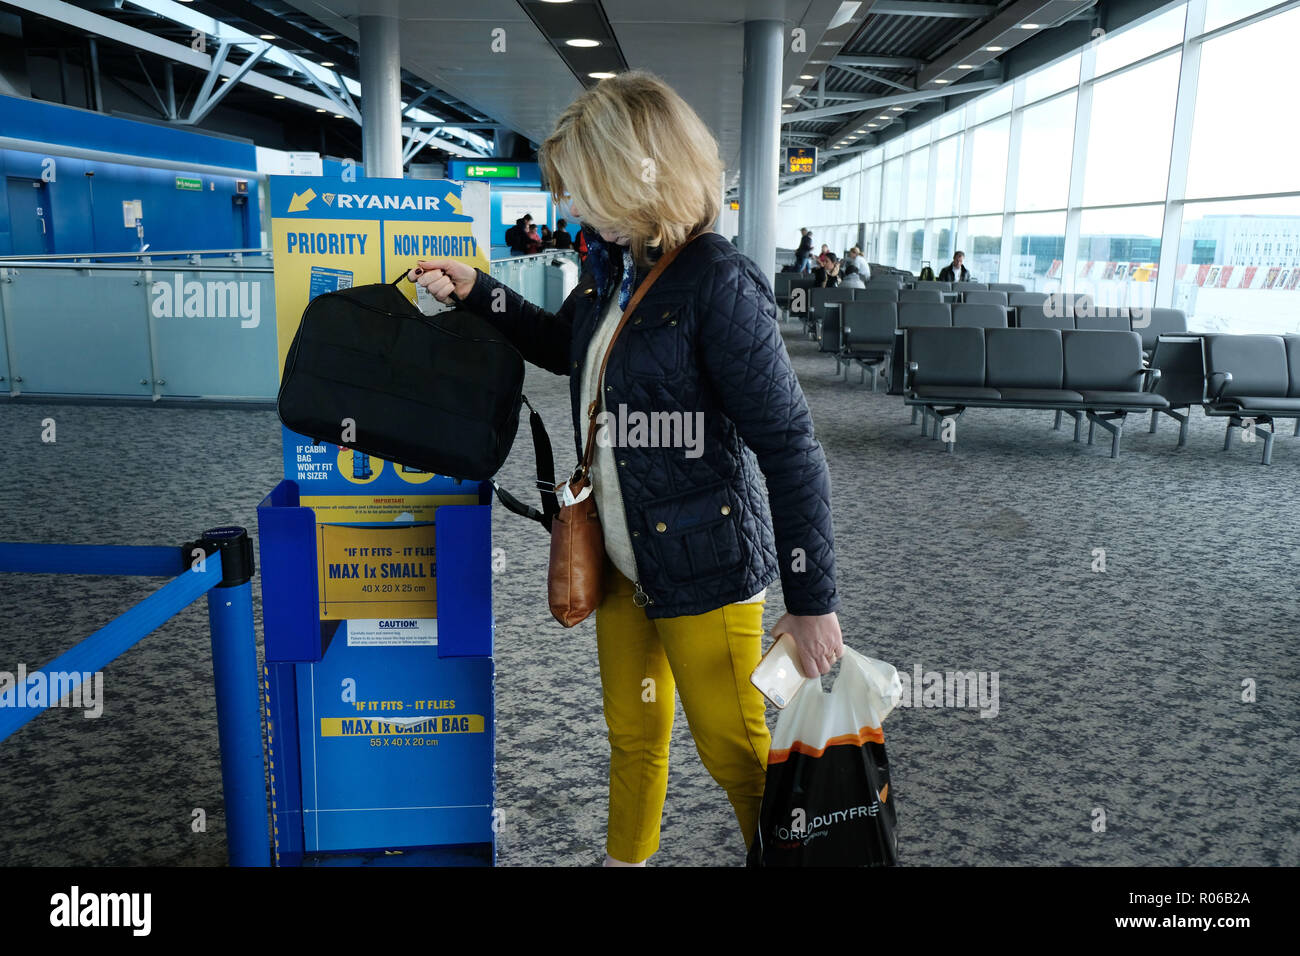 Pic muestra: nueva bolsa diminuto tamaño permitido en aviones de Ryanair de  forma gratuita. Control sizer en todas las puertas para dejar pasajeros ver  aquí en el aeropuerto de Stansted. P Fotografía